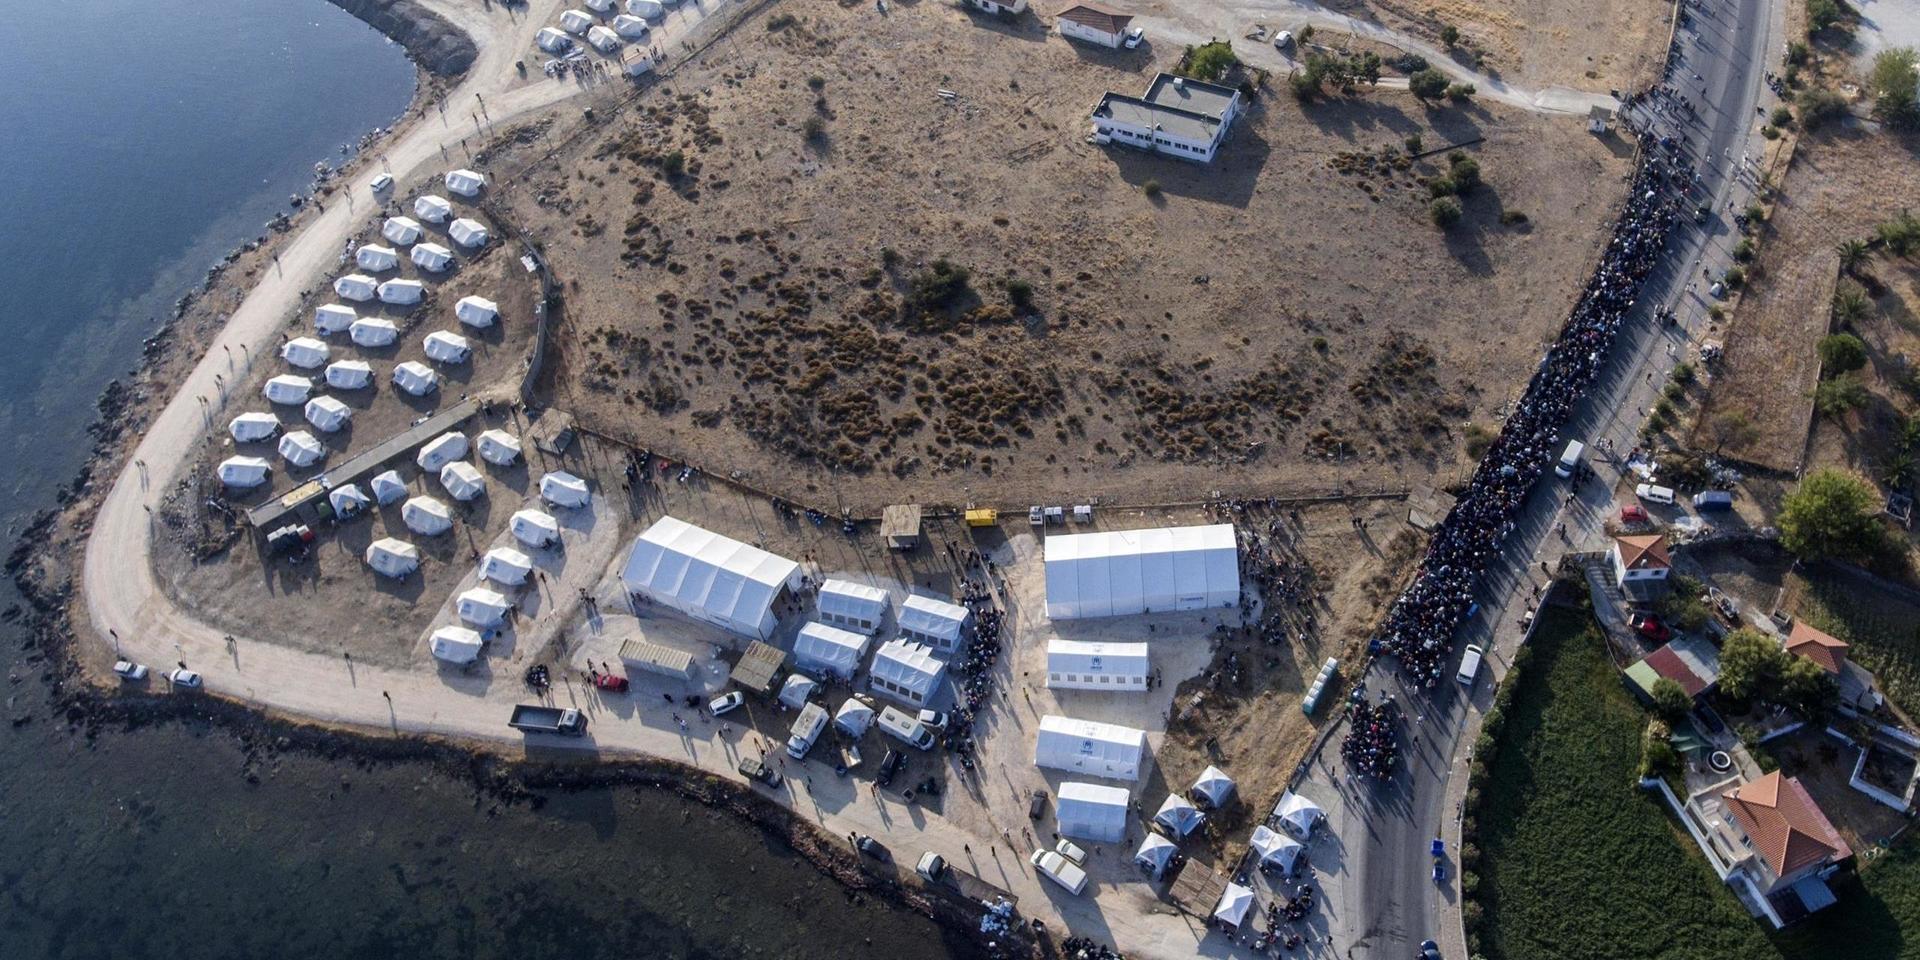 Omkring 9 000 personer ska ha flyttat in i det tillfälliga lägret på Lesbos.